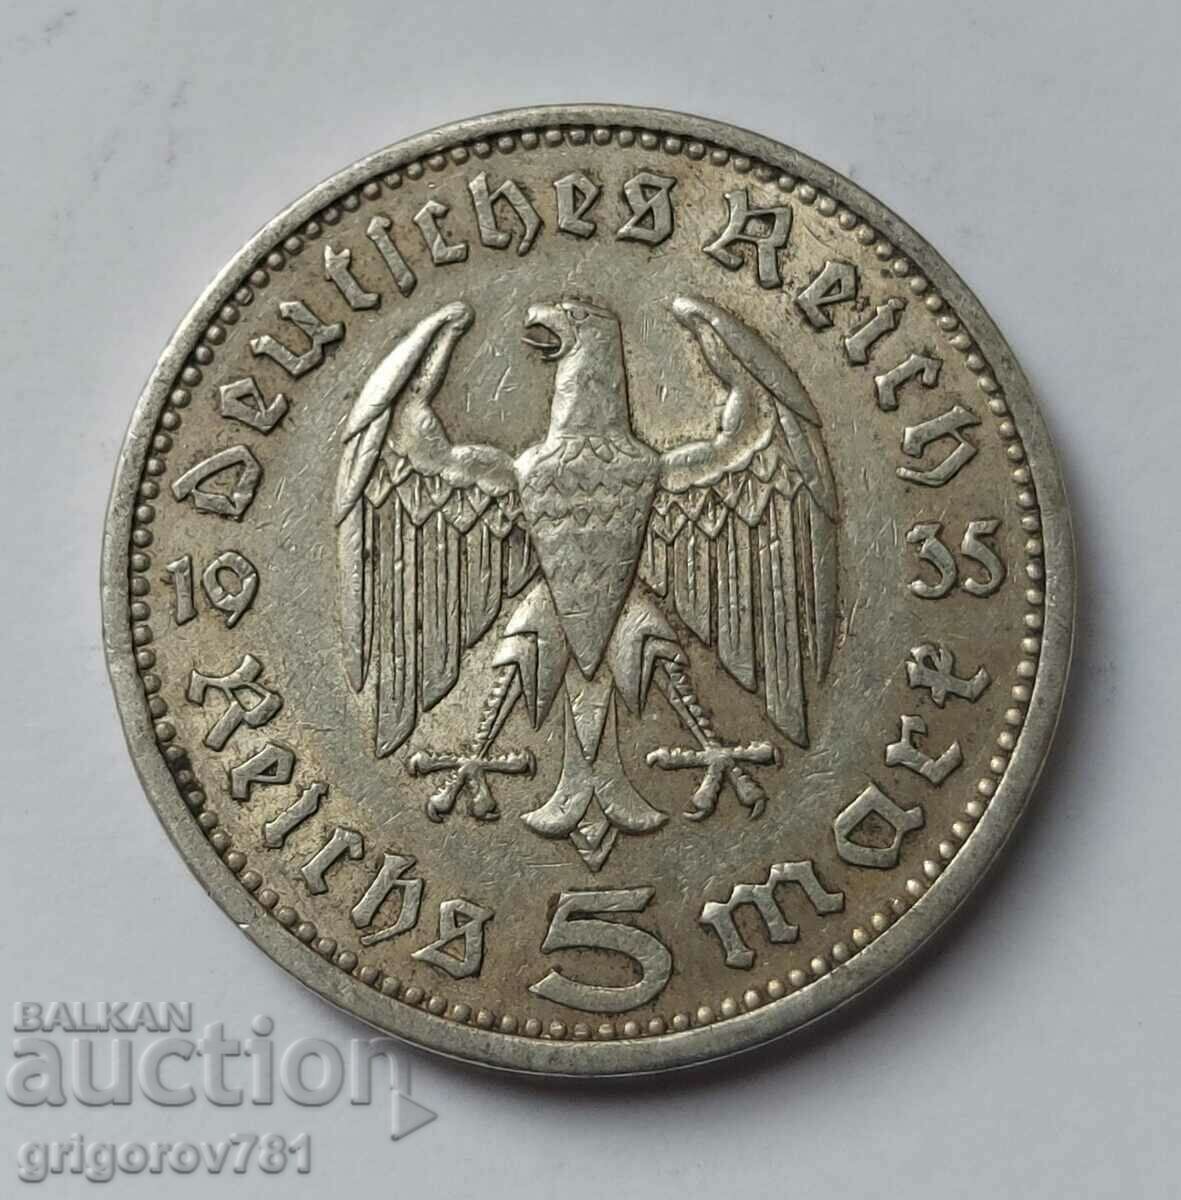 5 Mark Silver Γερμανία 1935 A III Reich Silver Coin #24